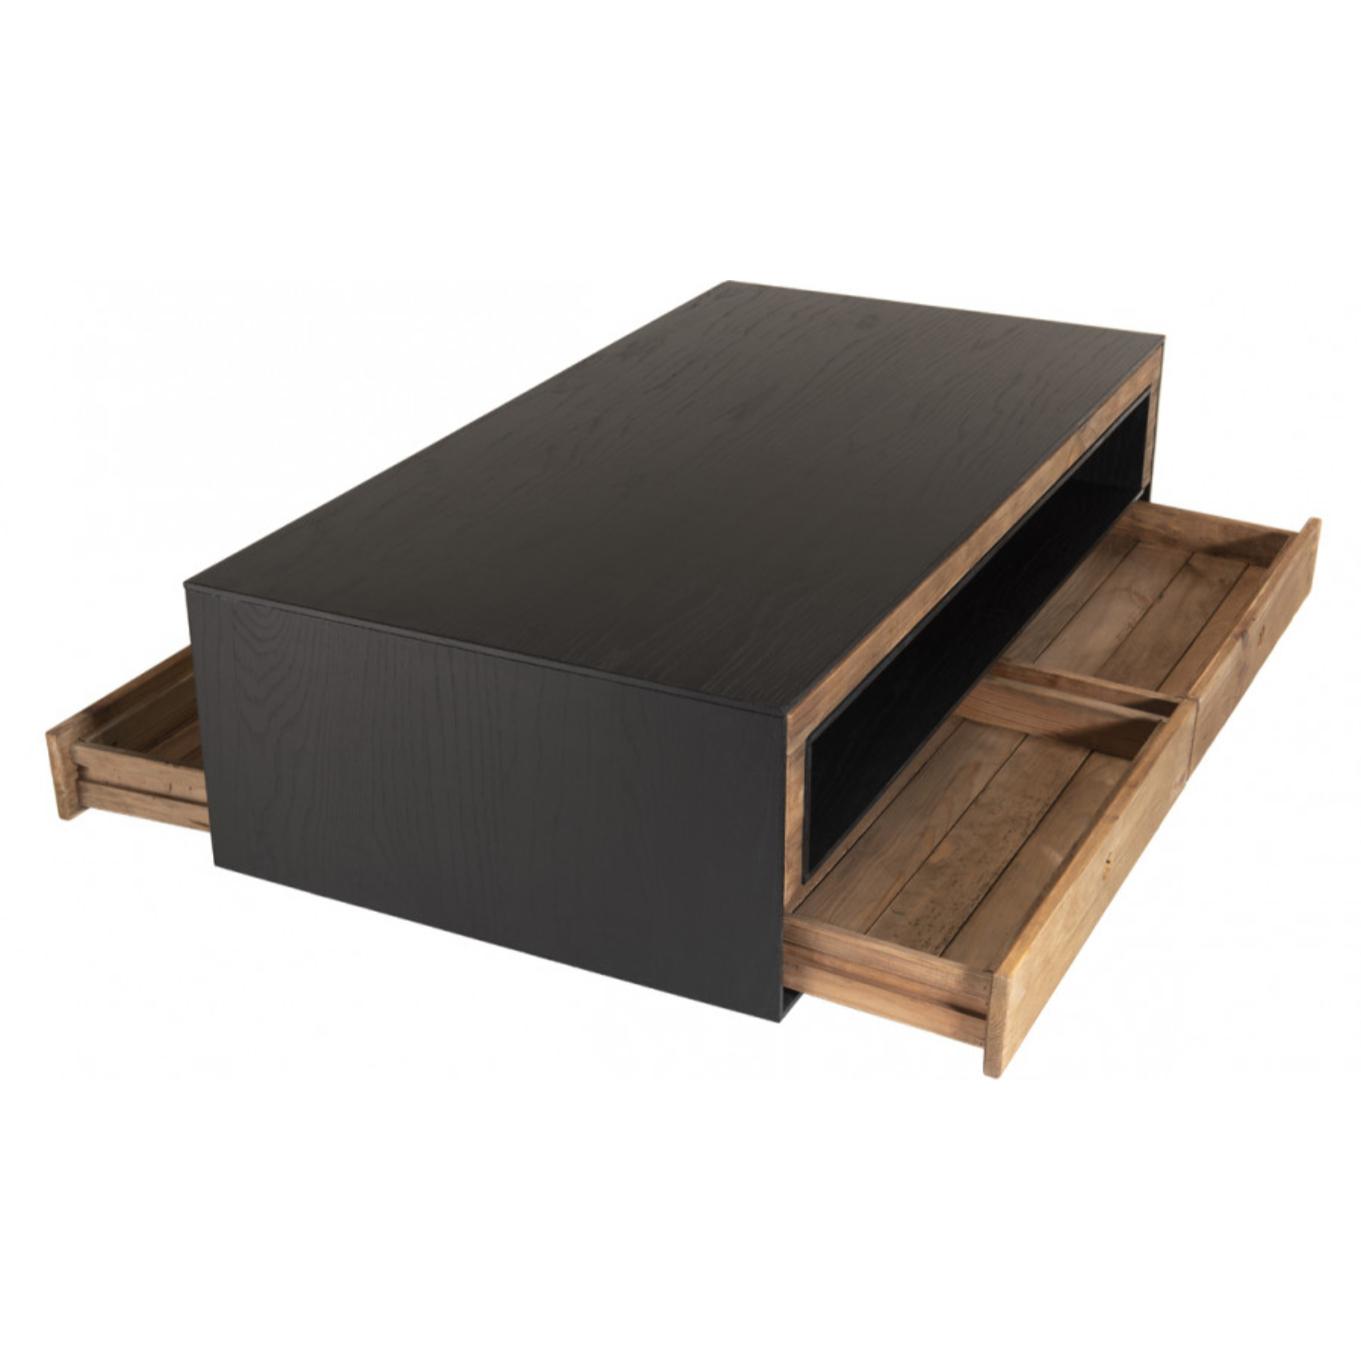 ANDREA - Table basse 4 tiroirs 1 niche bois Pin recyclé naturel et noir